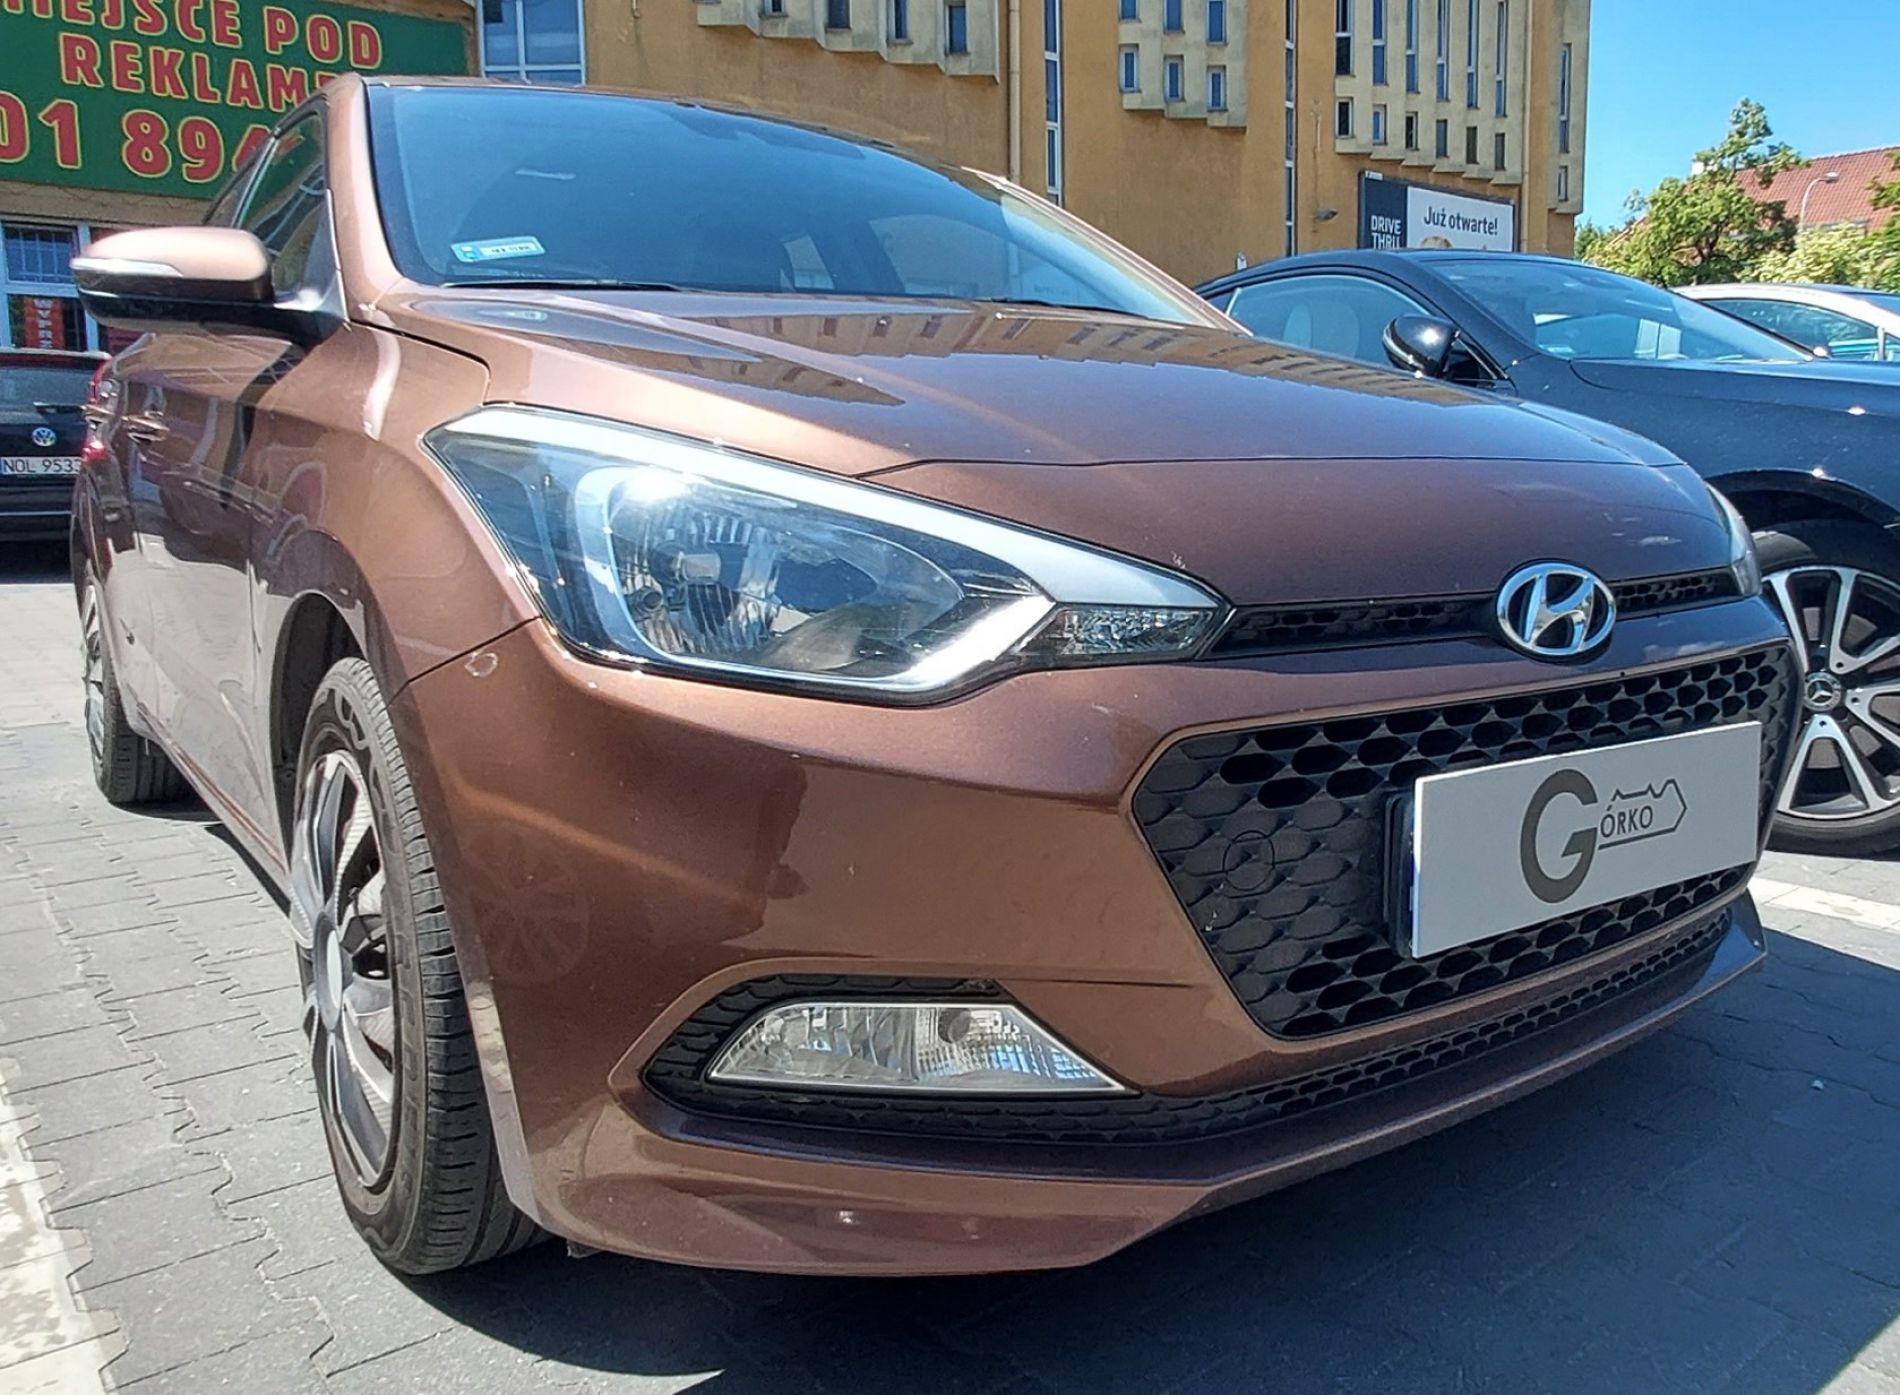 Dorobienie klucza do auta Hyundai i20 drugiej generacji z 2017 roku